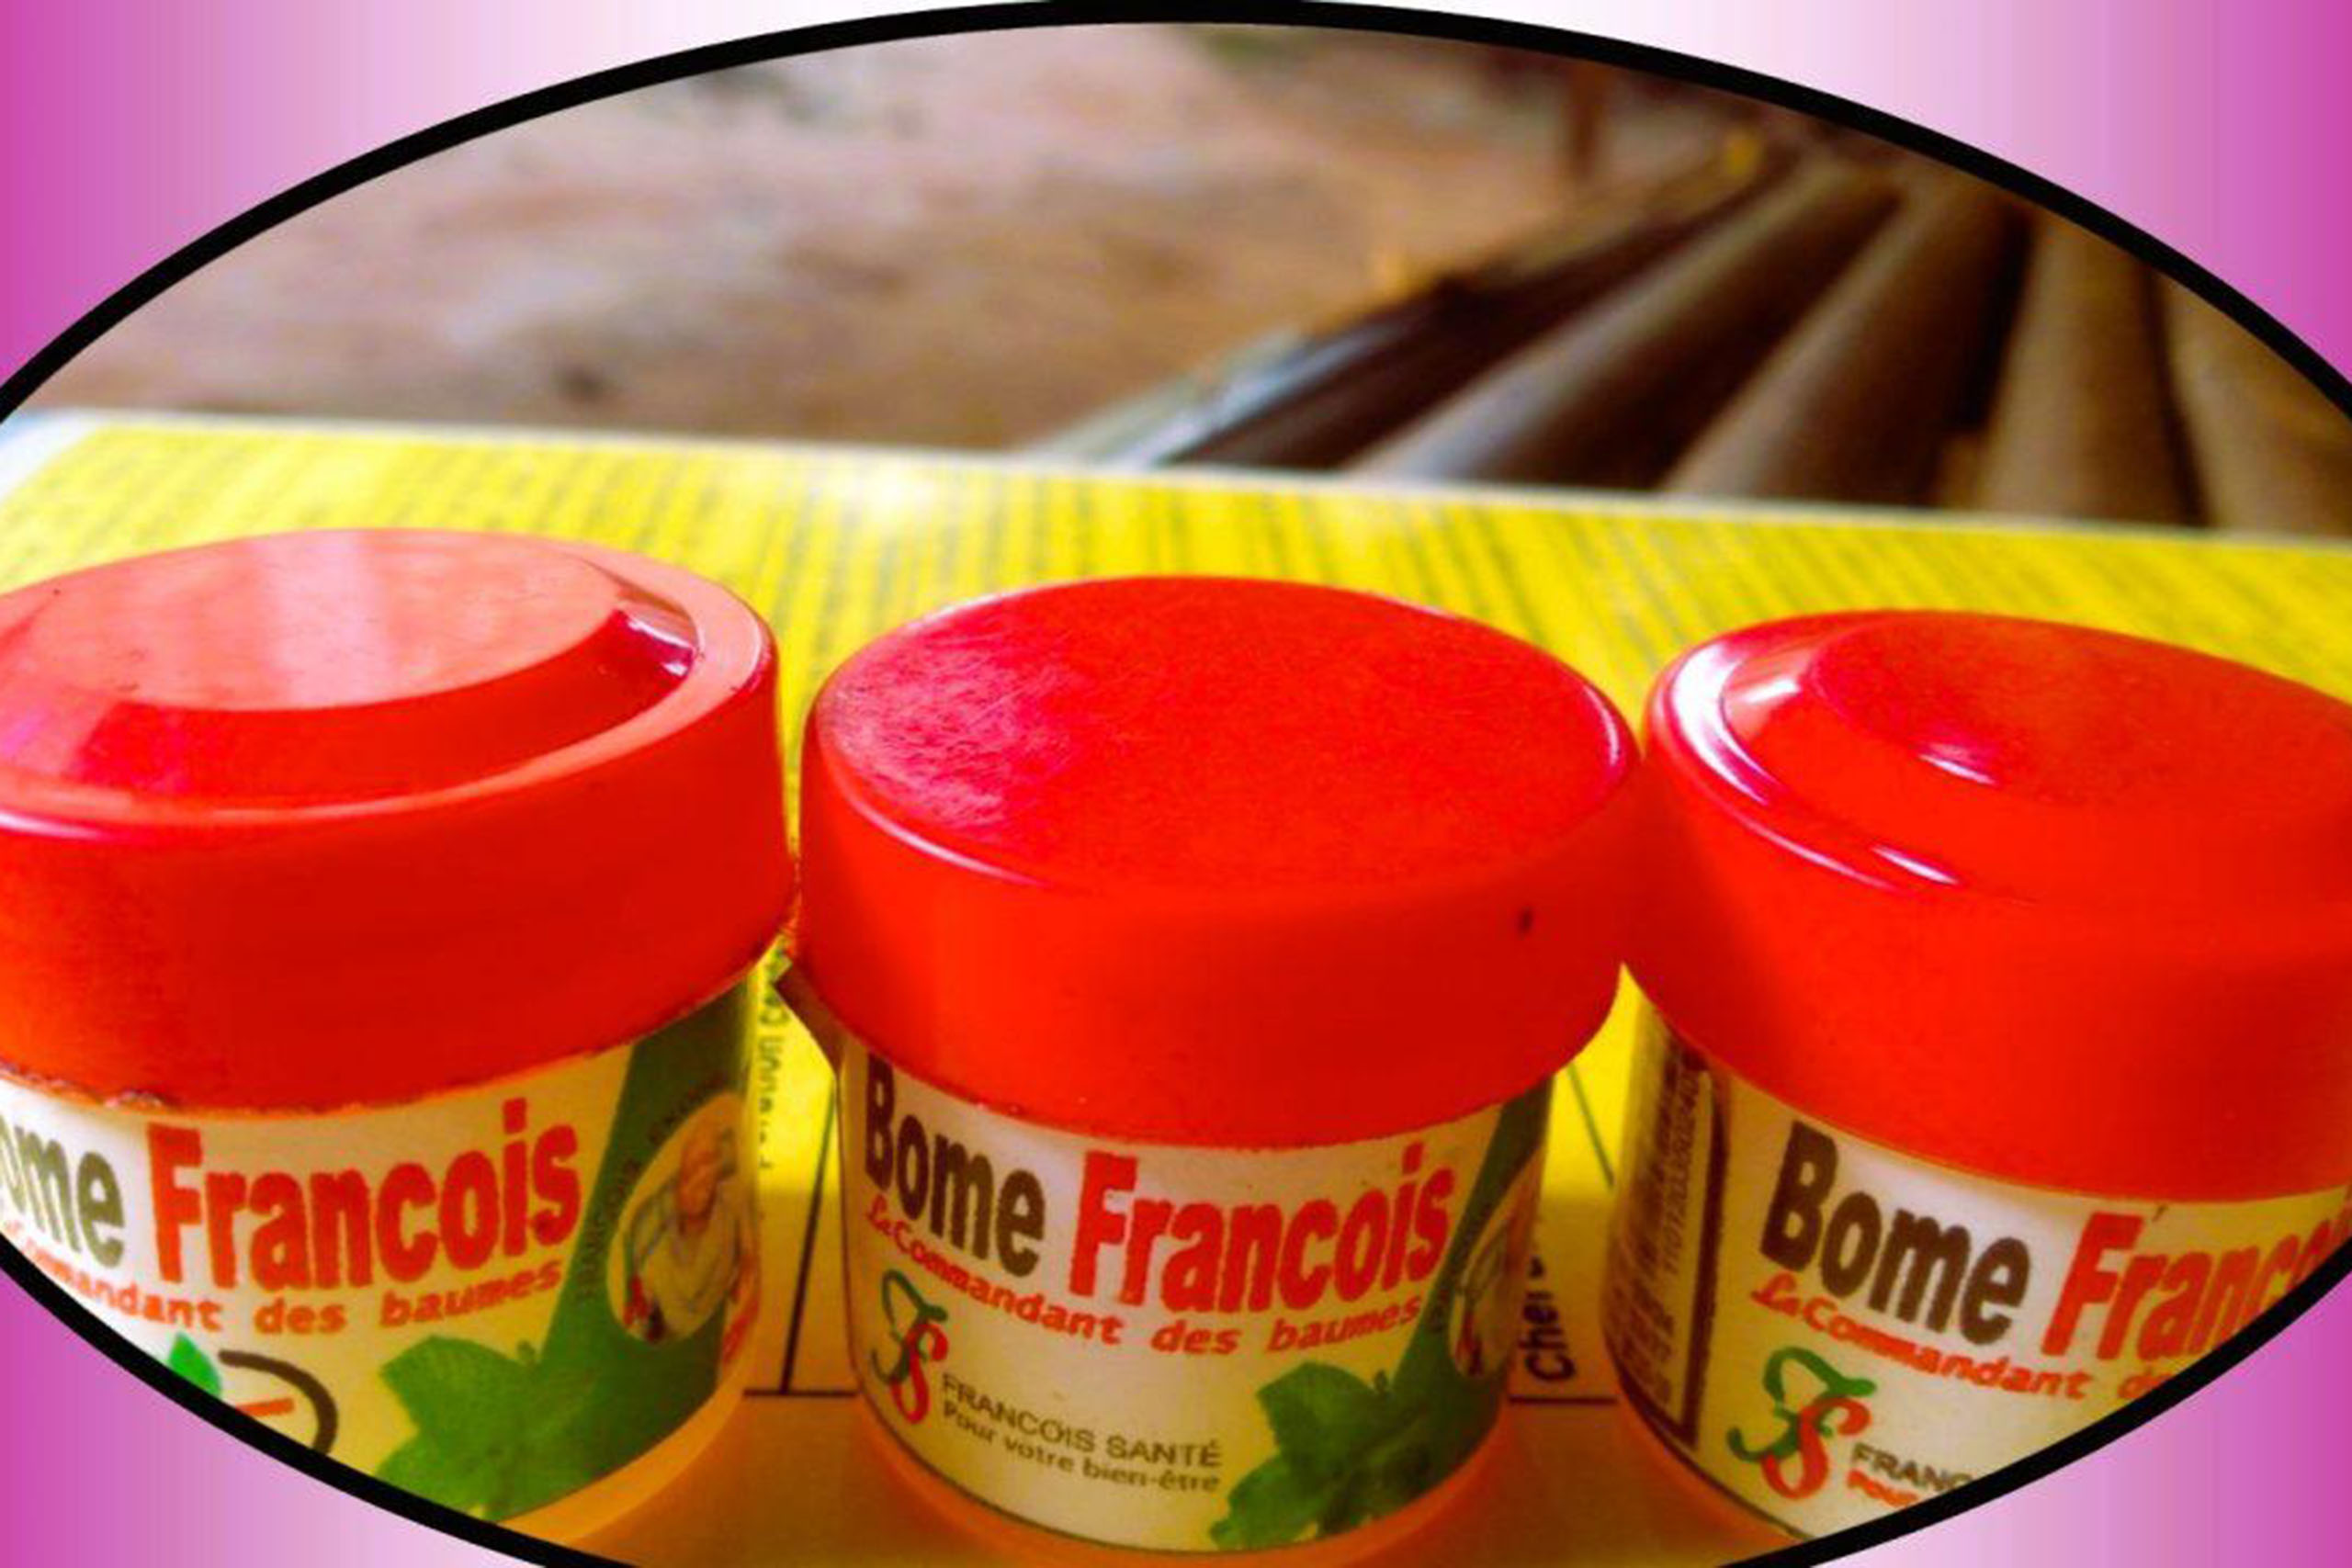 La vente du Bôme François menacé au Cameroun, plus de 3500 emplois menacés !